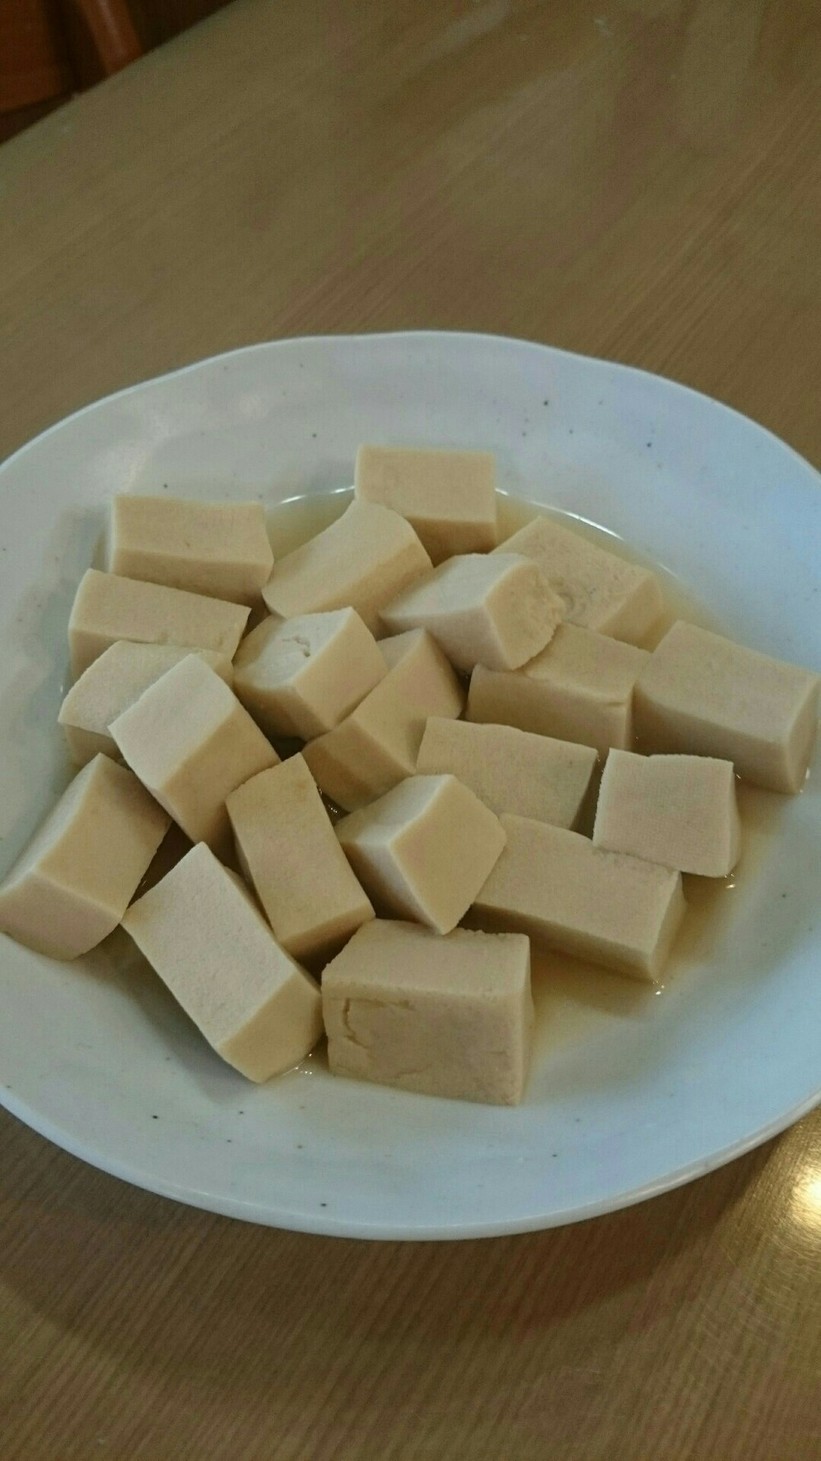 高野豆腐の煮物の画像